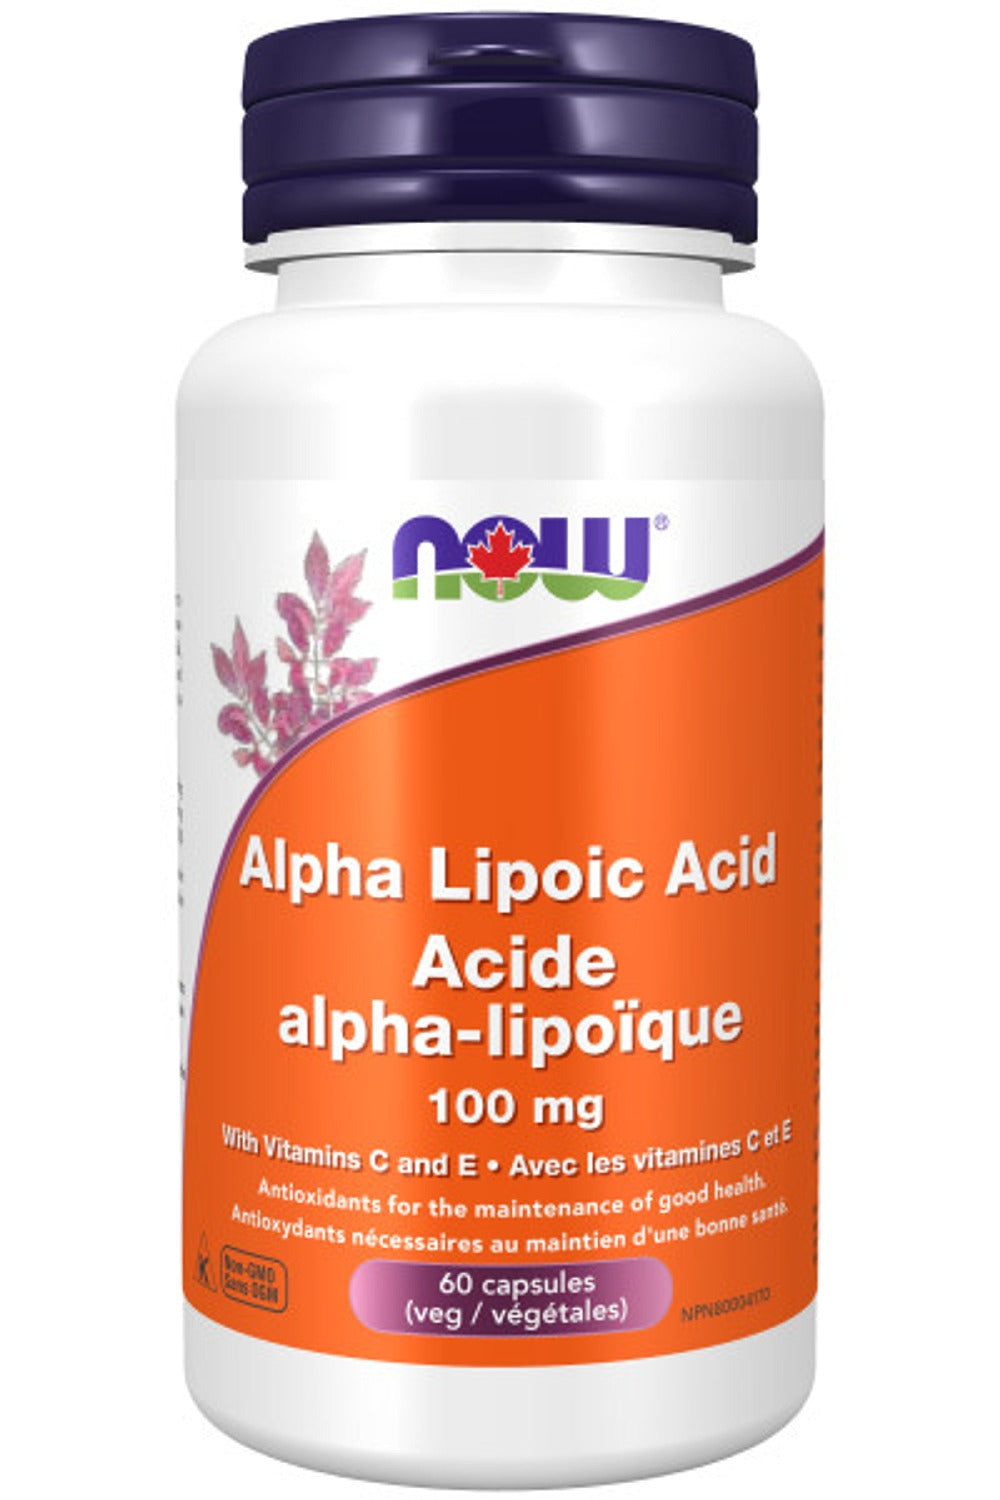 NOW Alpha Lipoic Acid + Vit E + Vit C (100 mg - 60 vcaps)